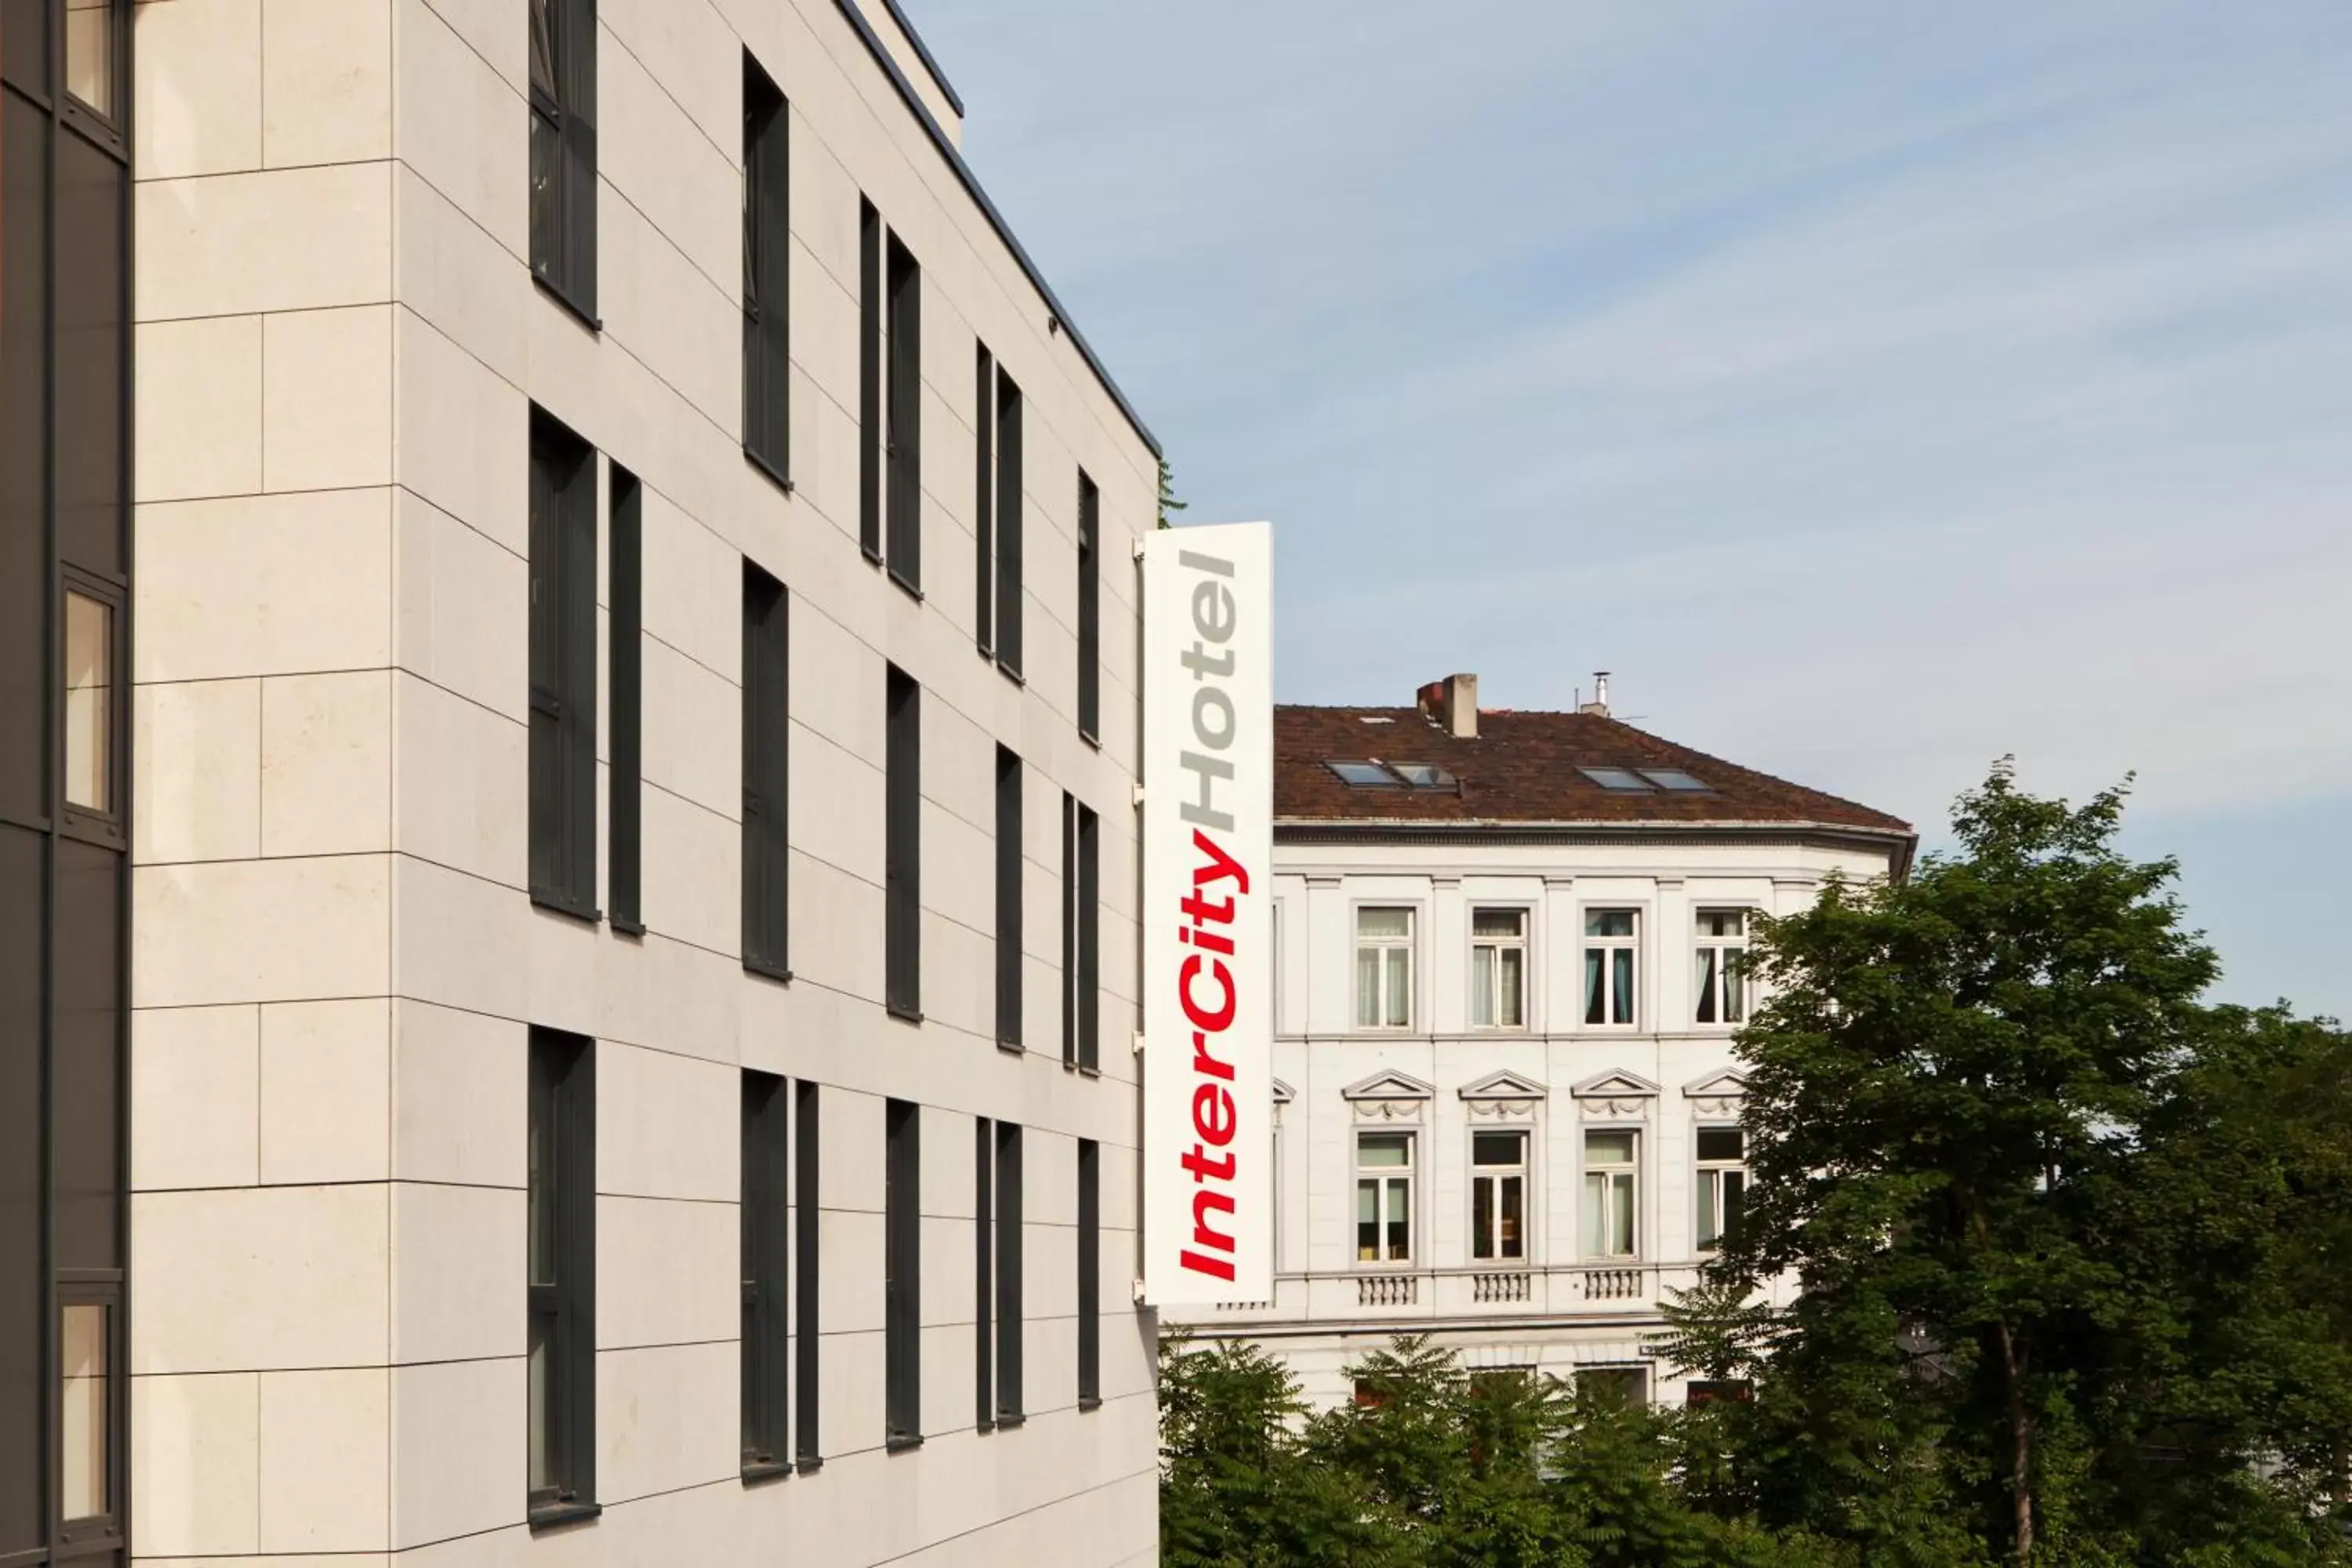 Facade/entrance, Property Building in IntercityHotel Bonn